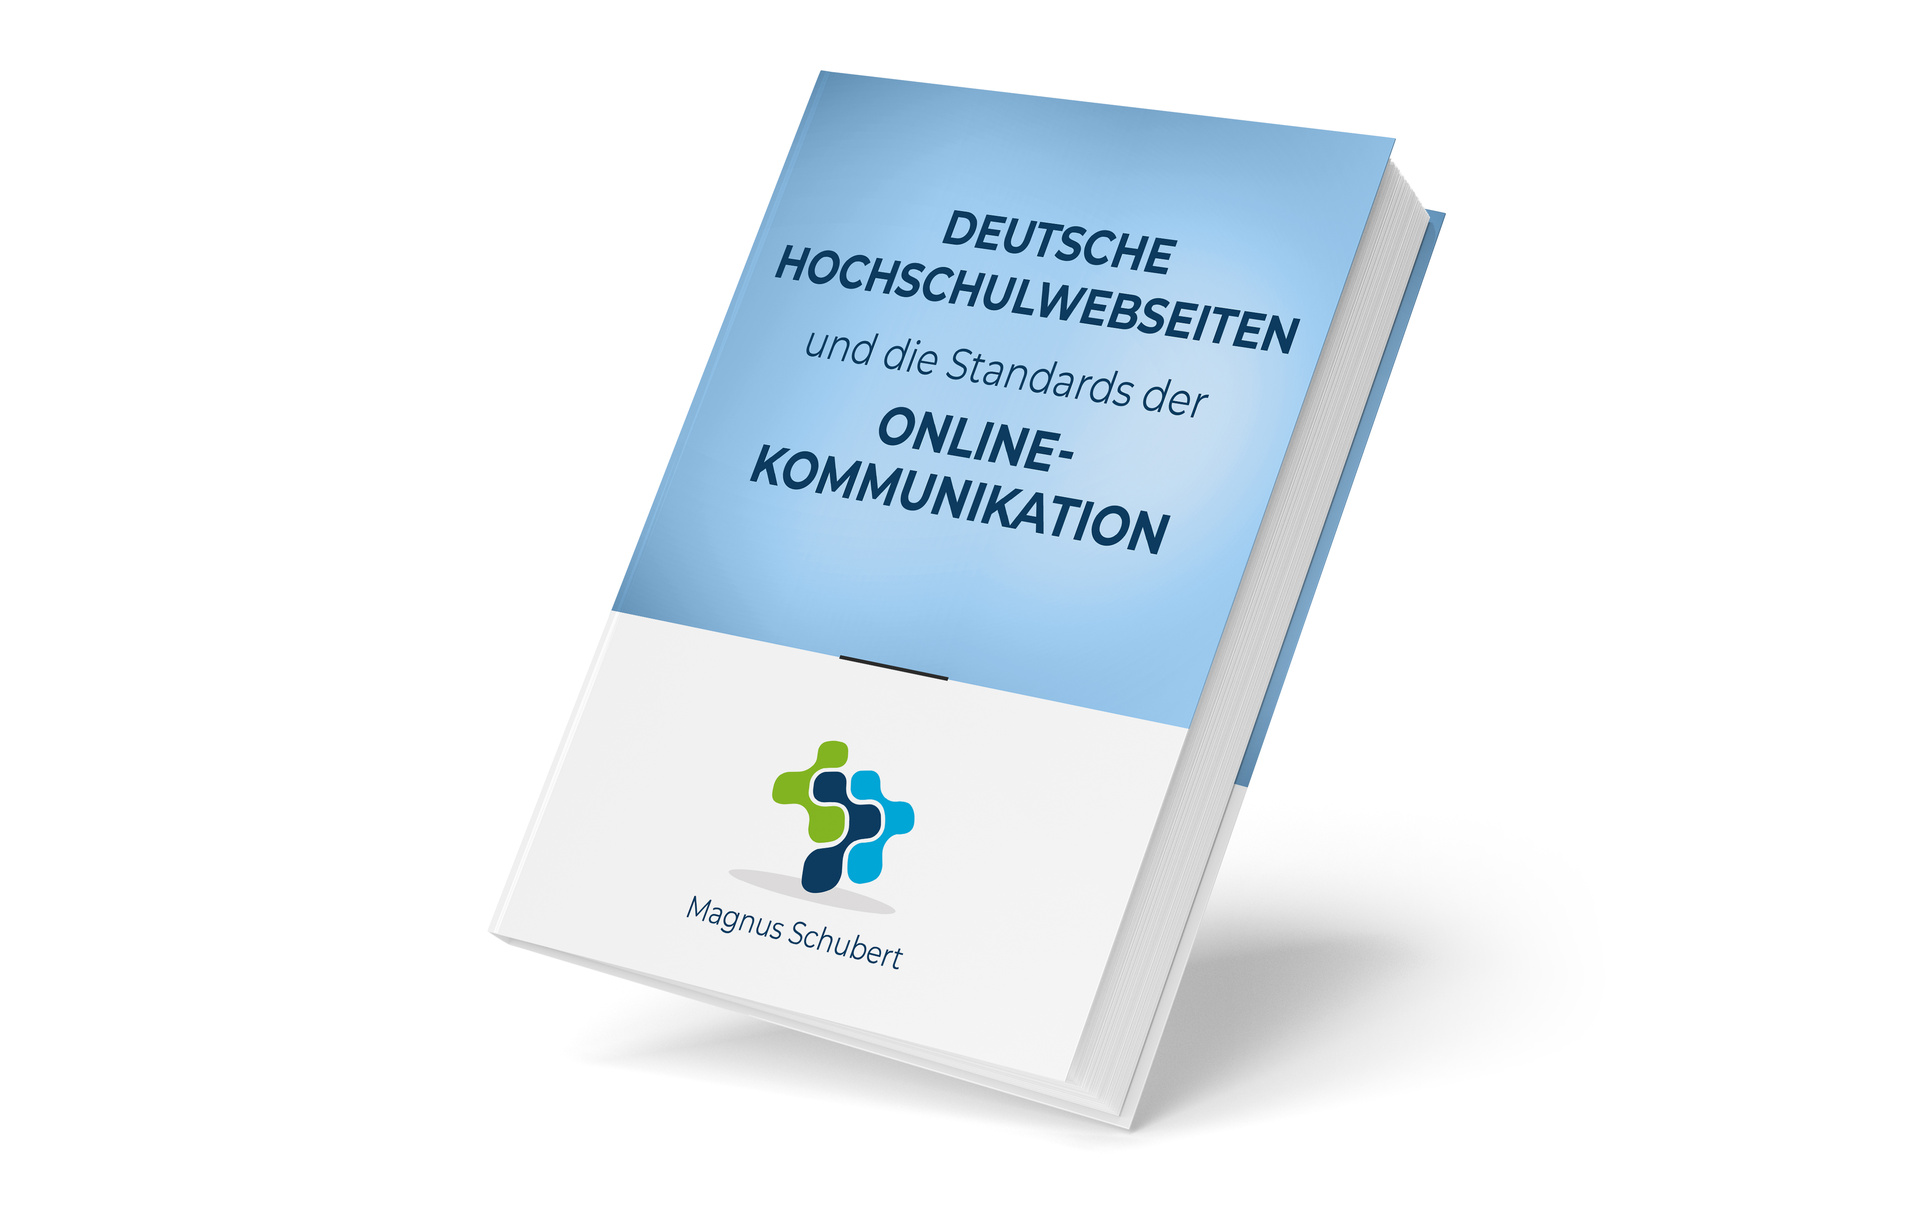 Deutsche Hochschulwebseiten und die Standards der Hochschulkommunikation